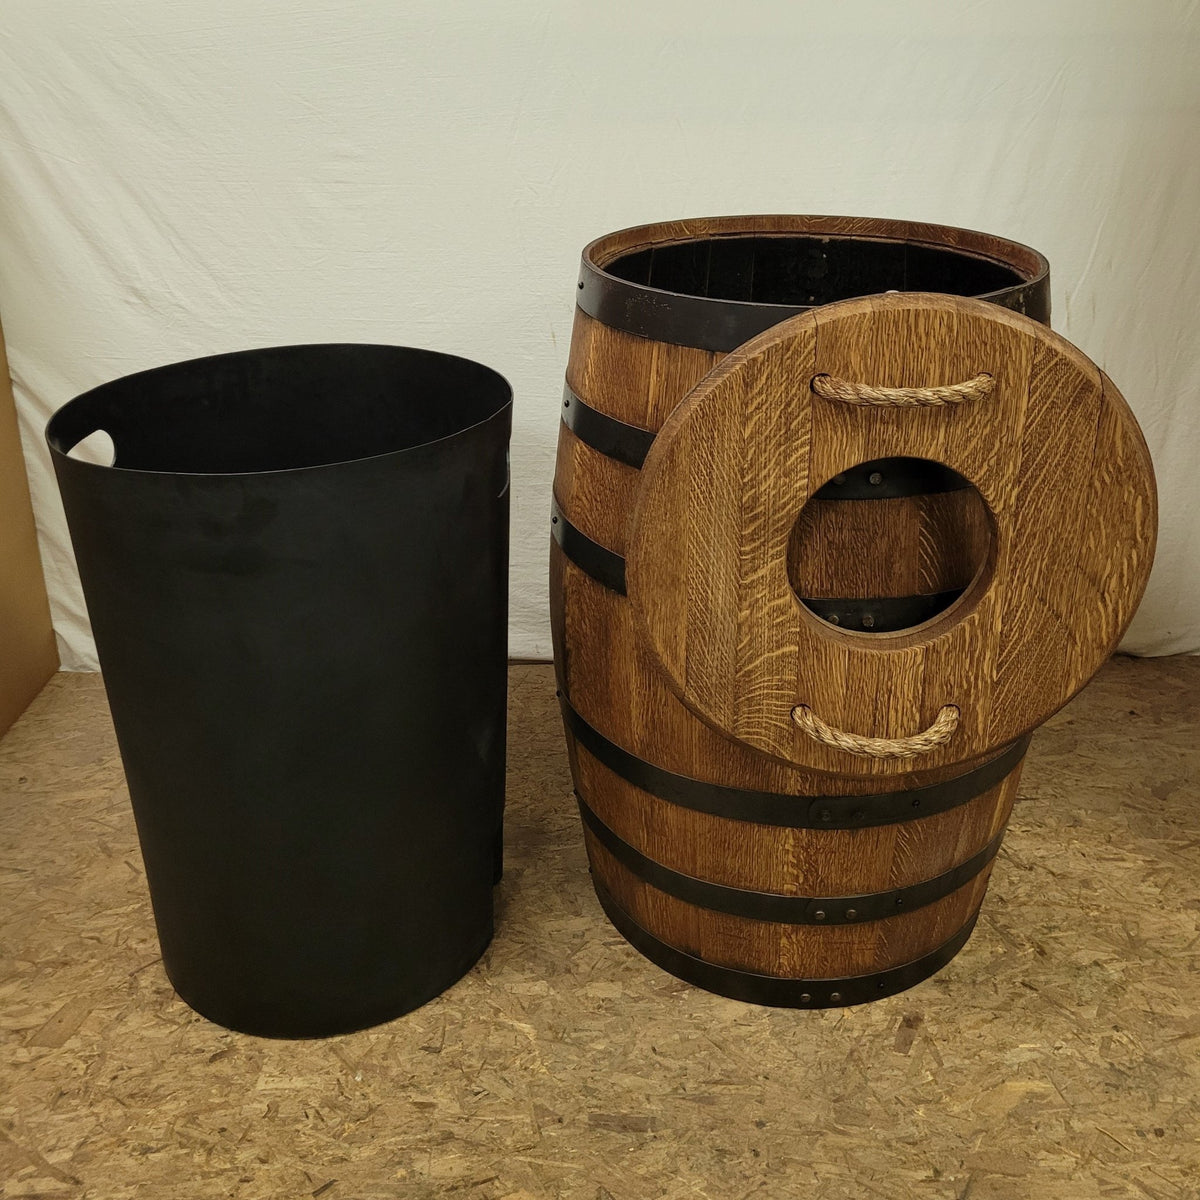 Barrel Trash can — King Barrel